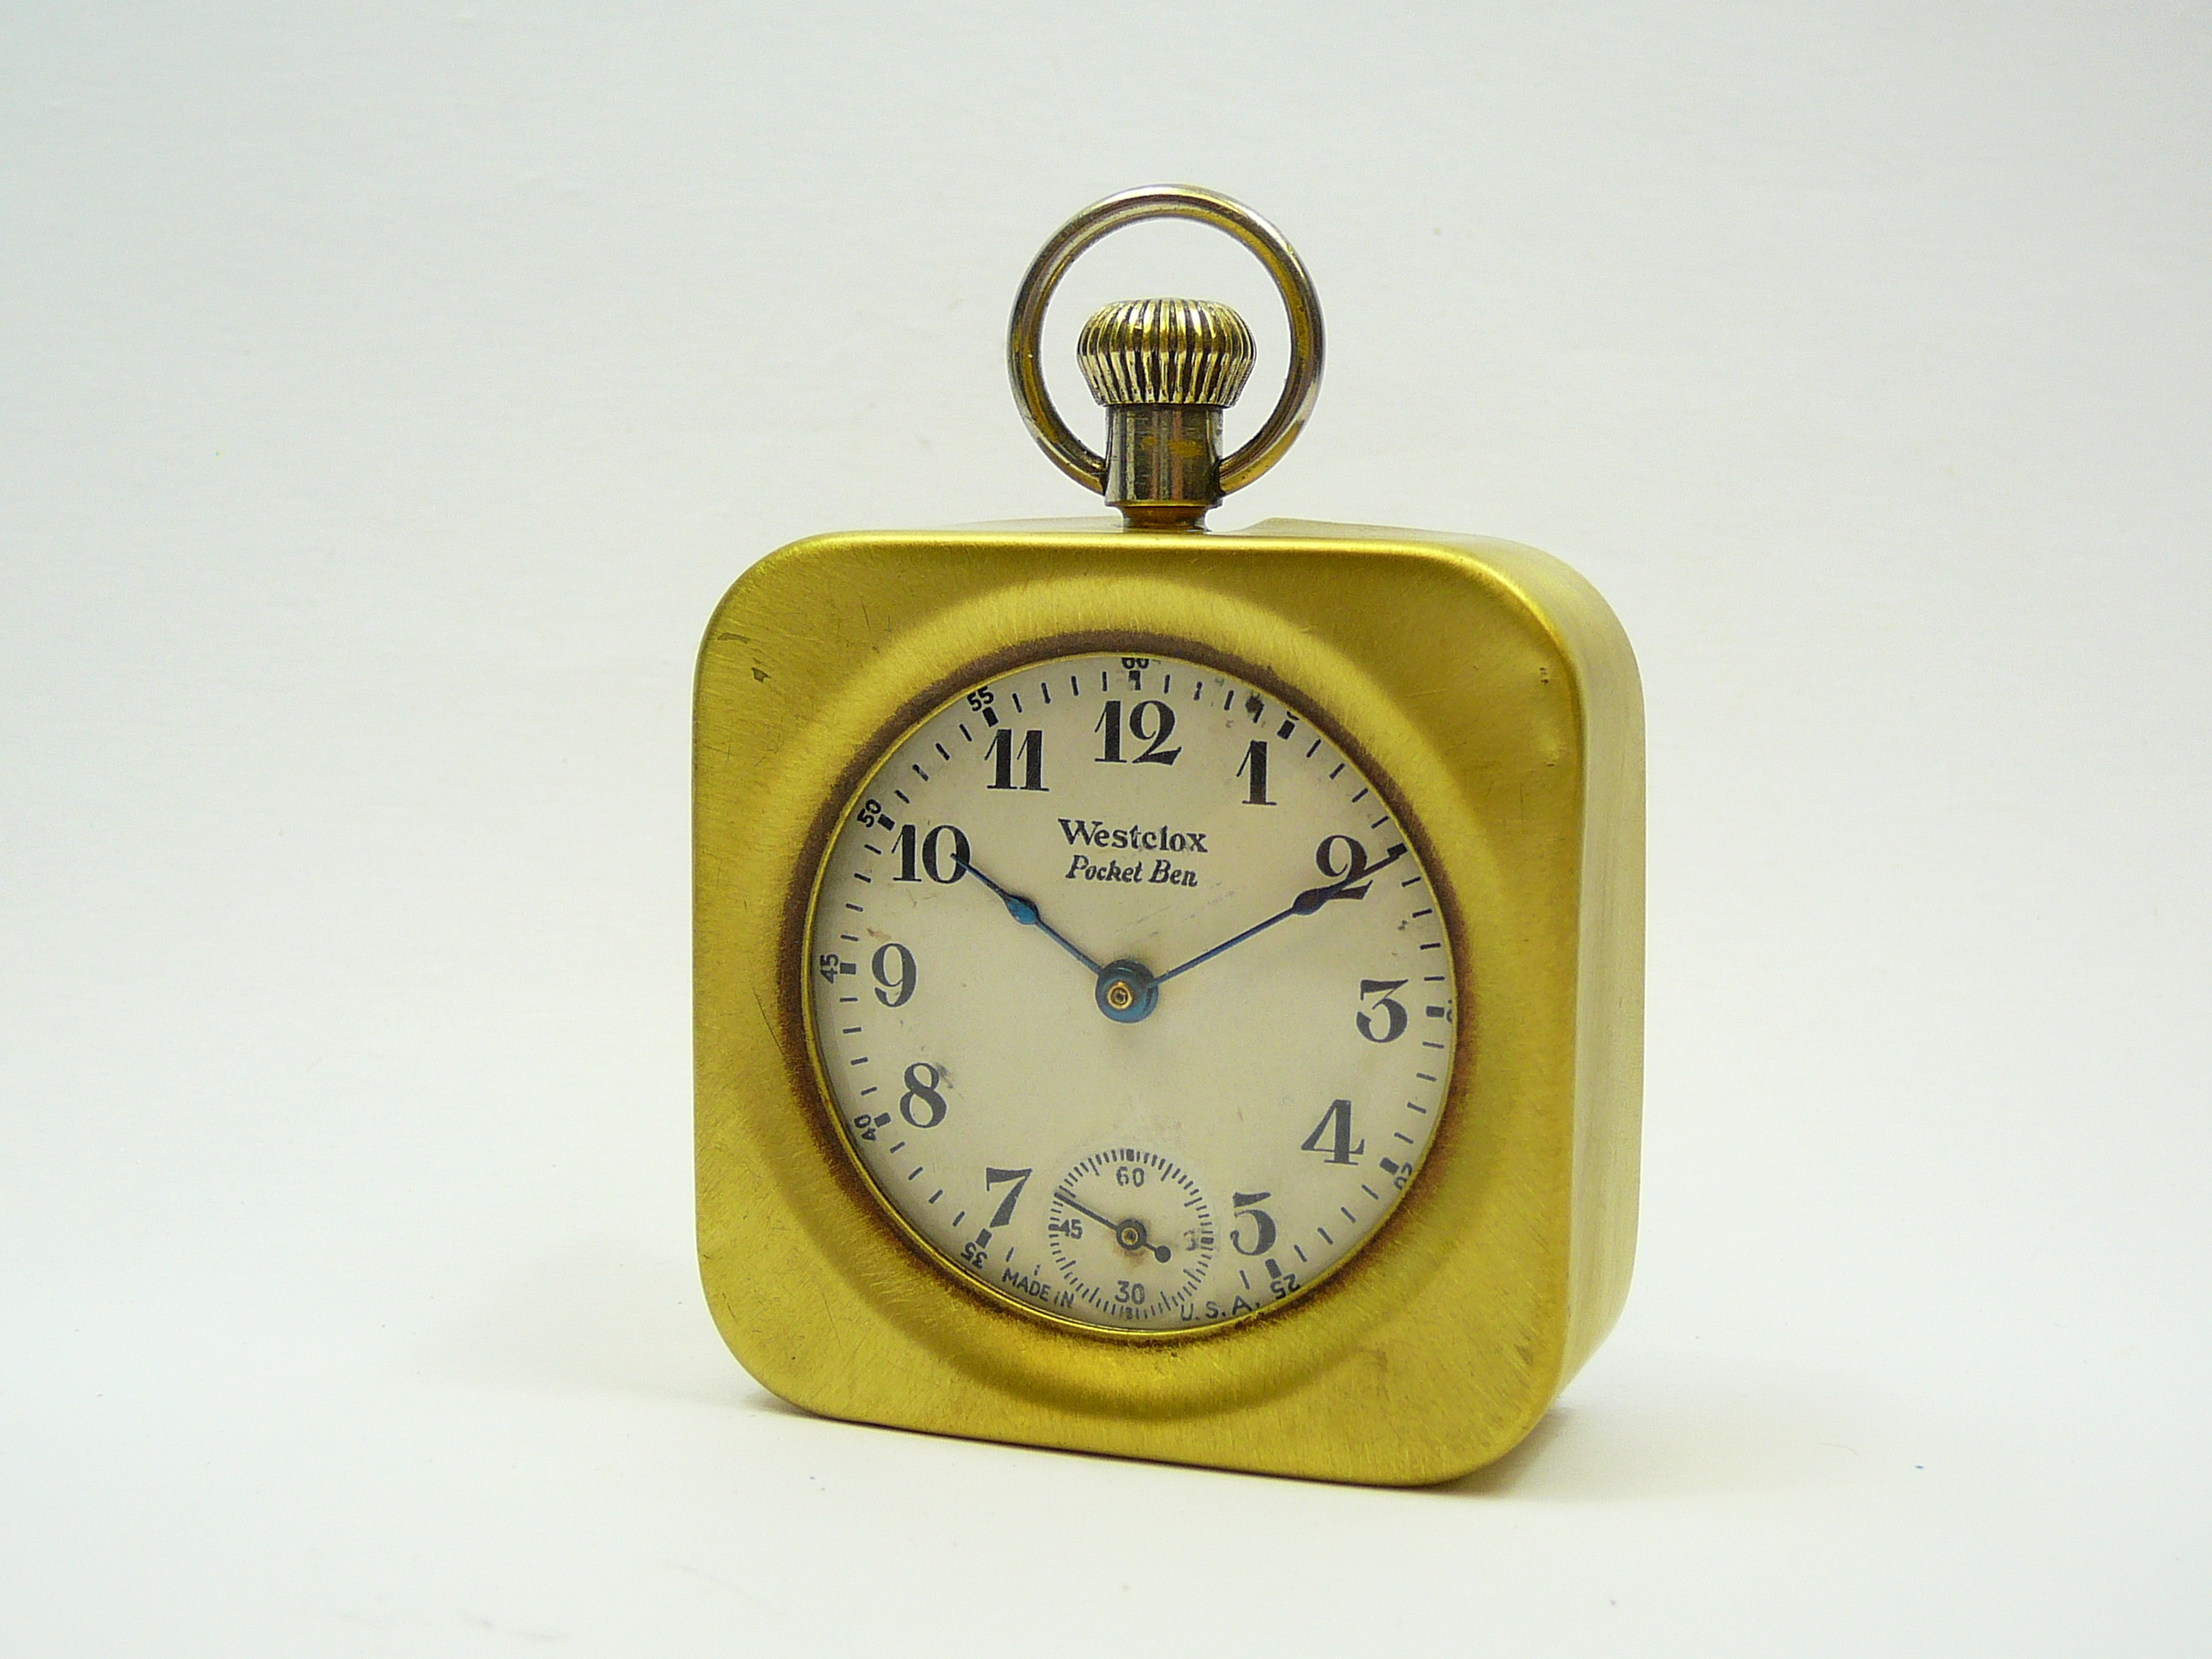 Brass watch case and pocketwatch